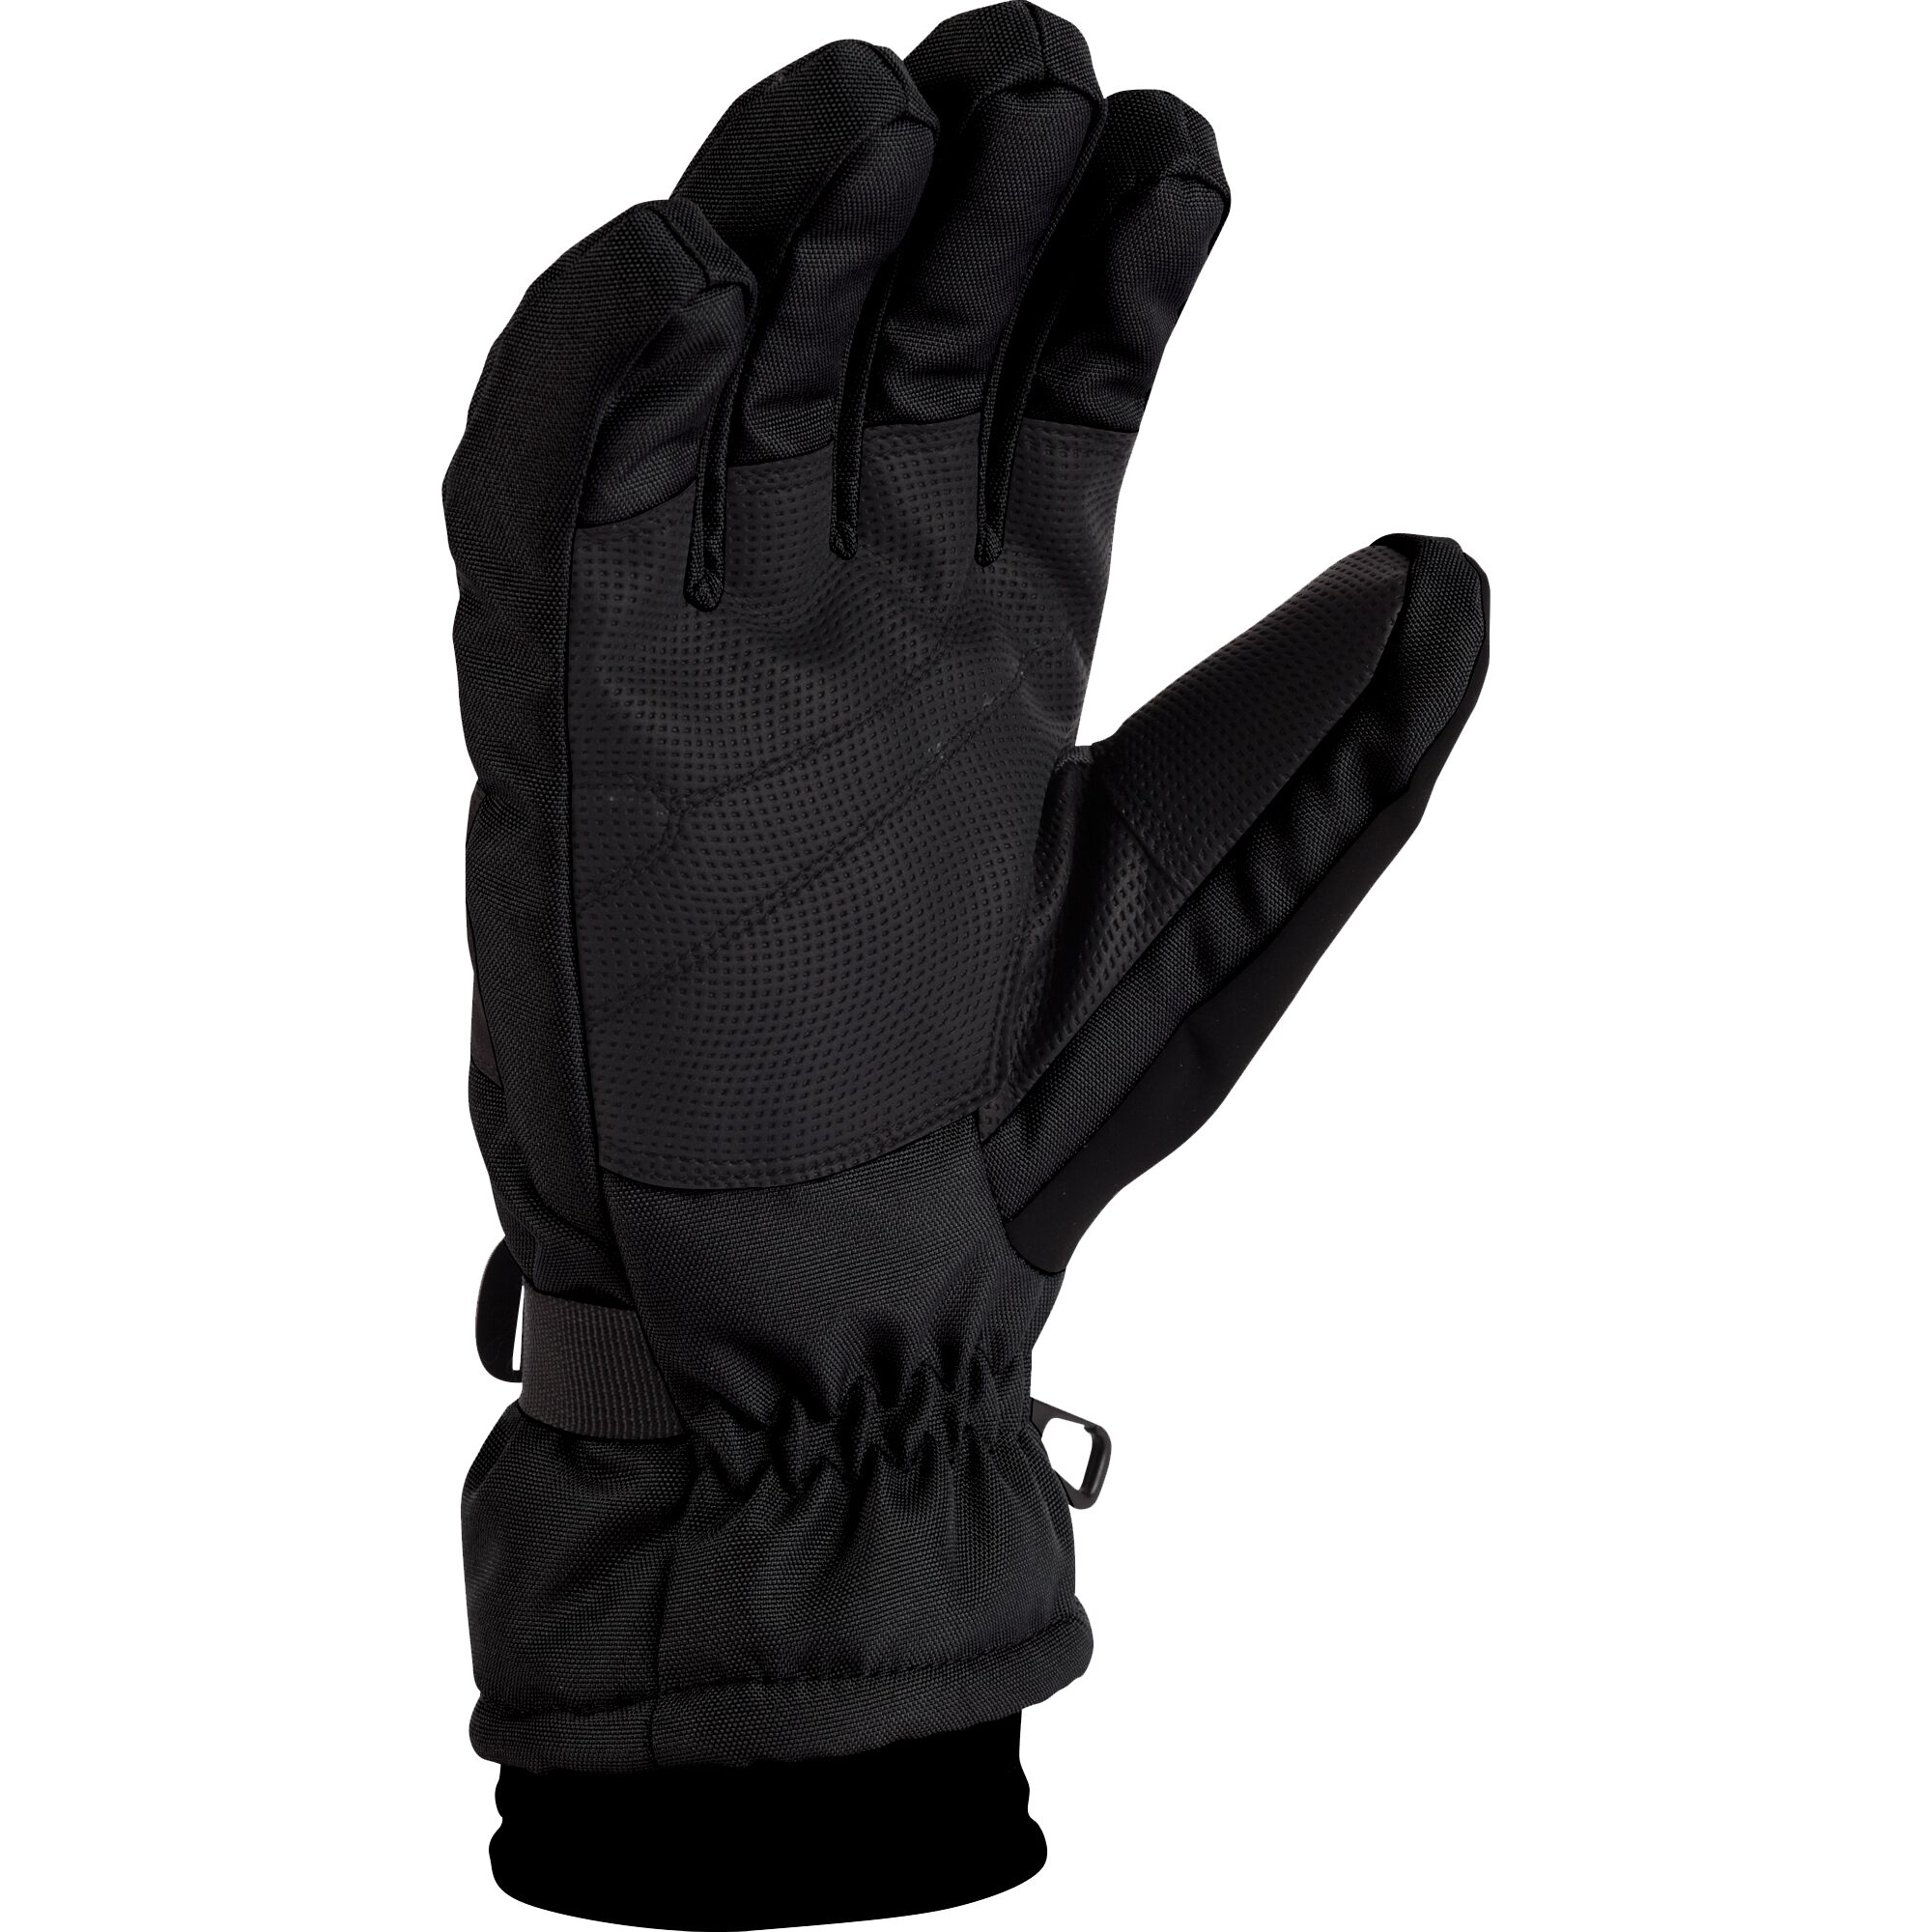 Men's Waterproof Insulated Winter Gloves